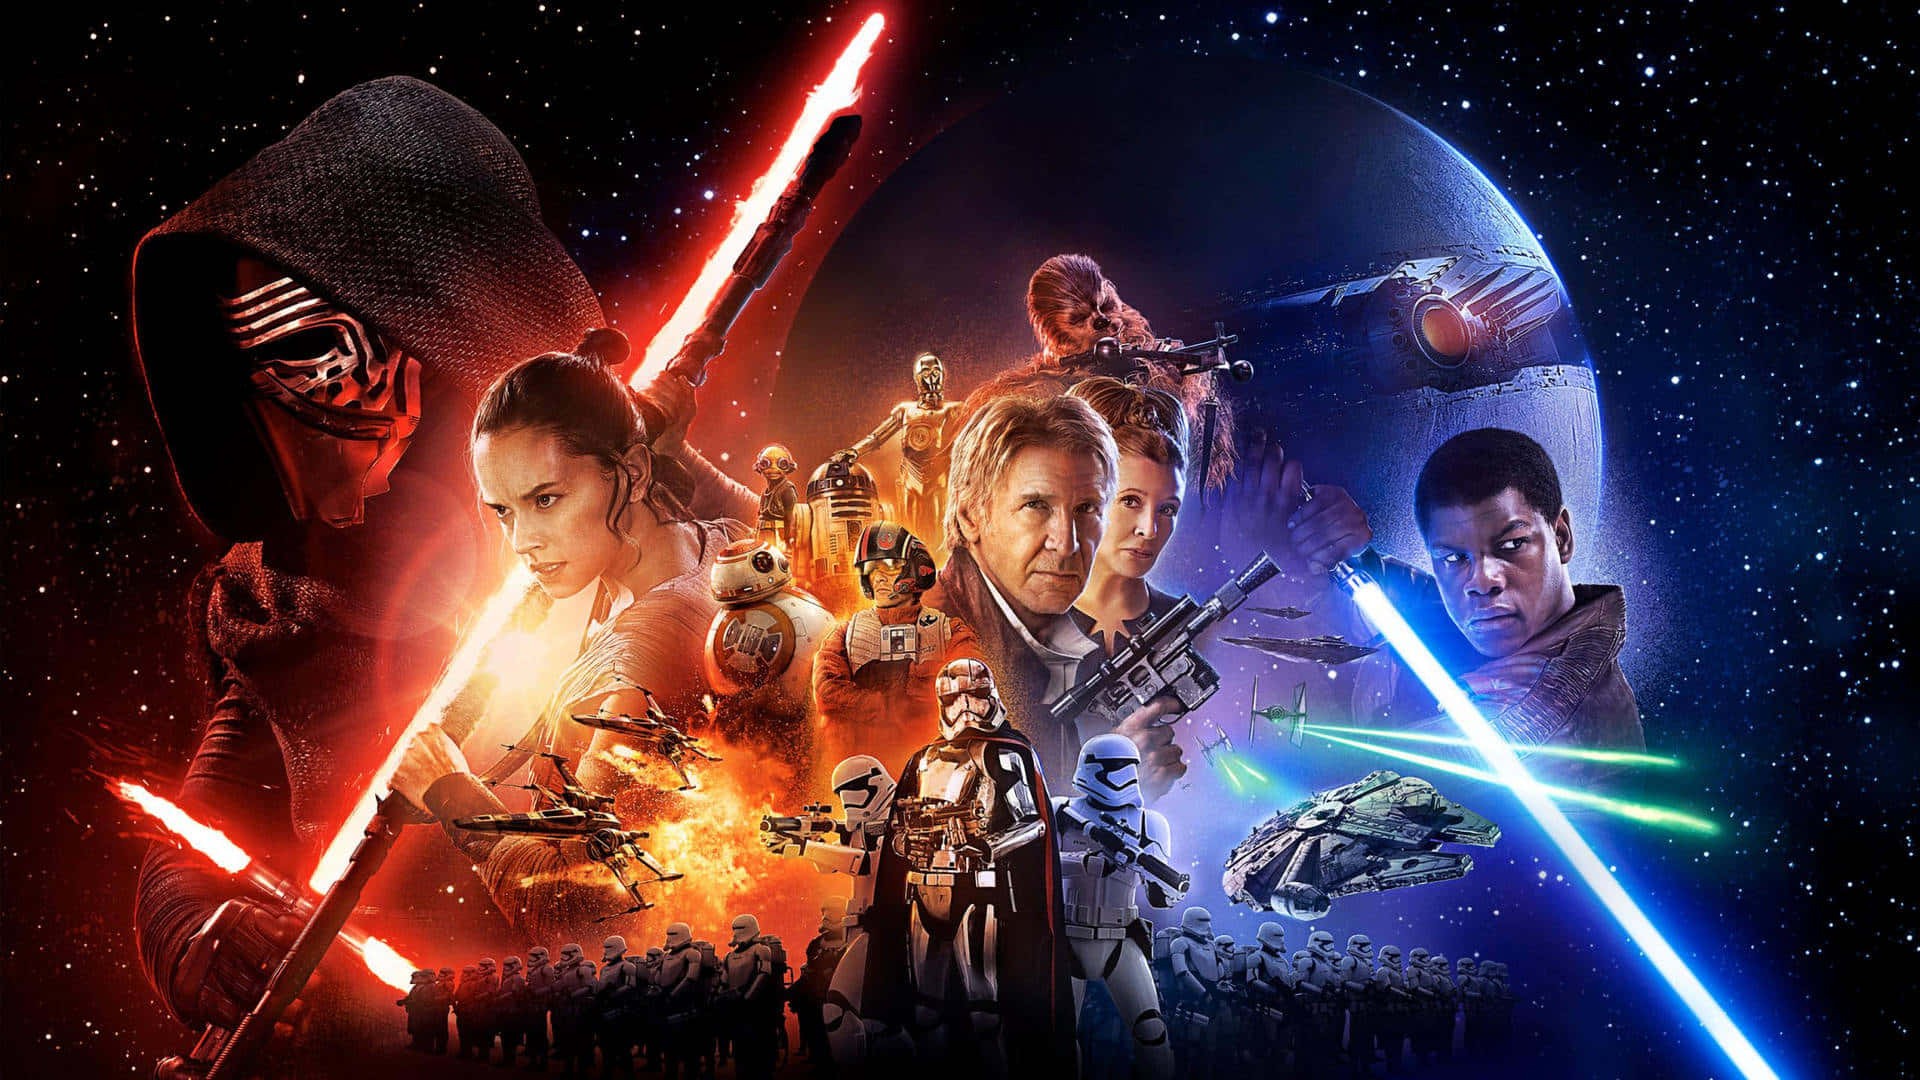 Star Wars The Force Awaken Background